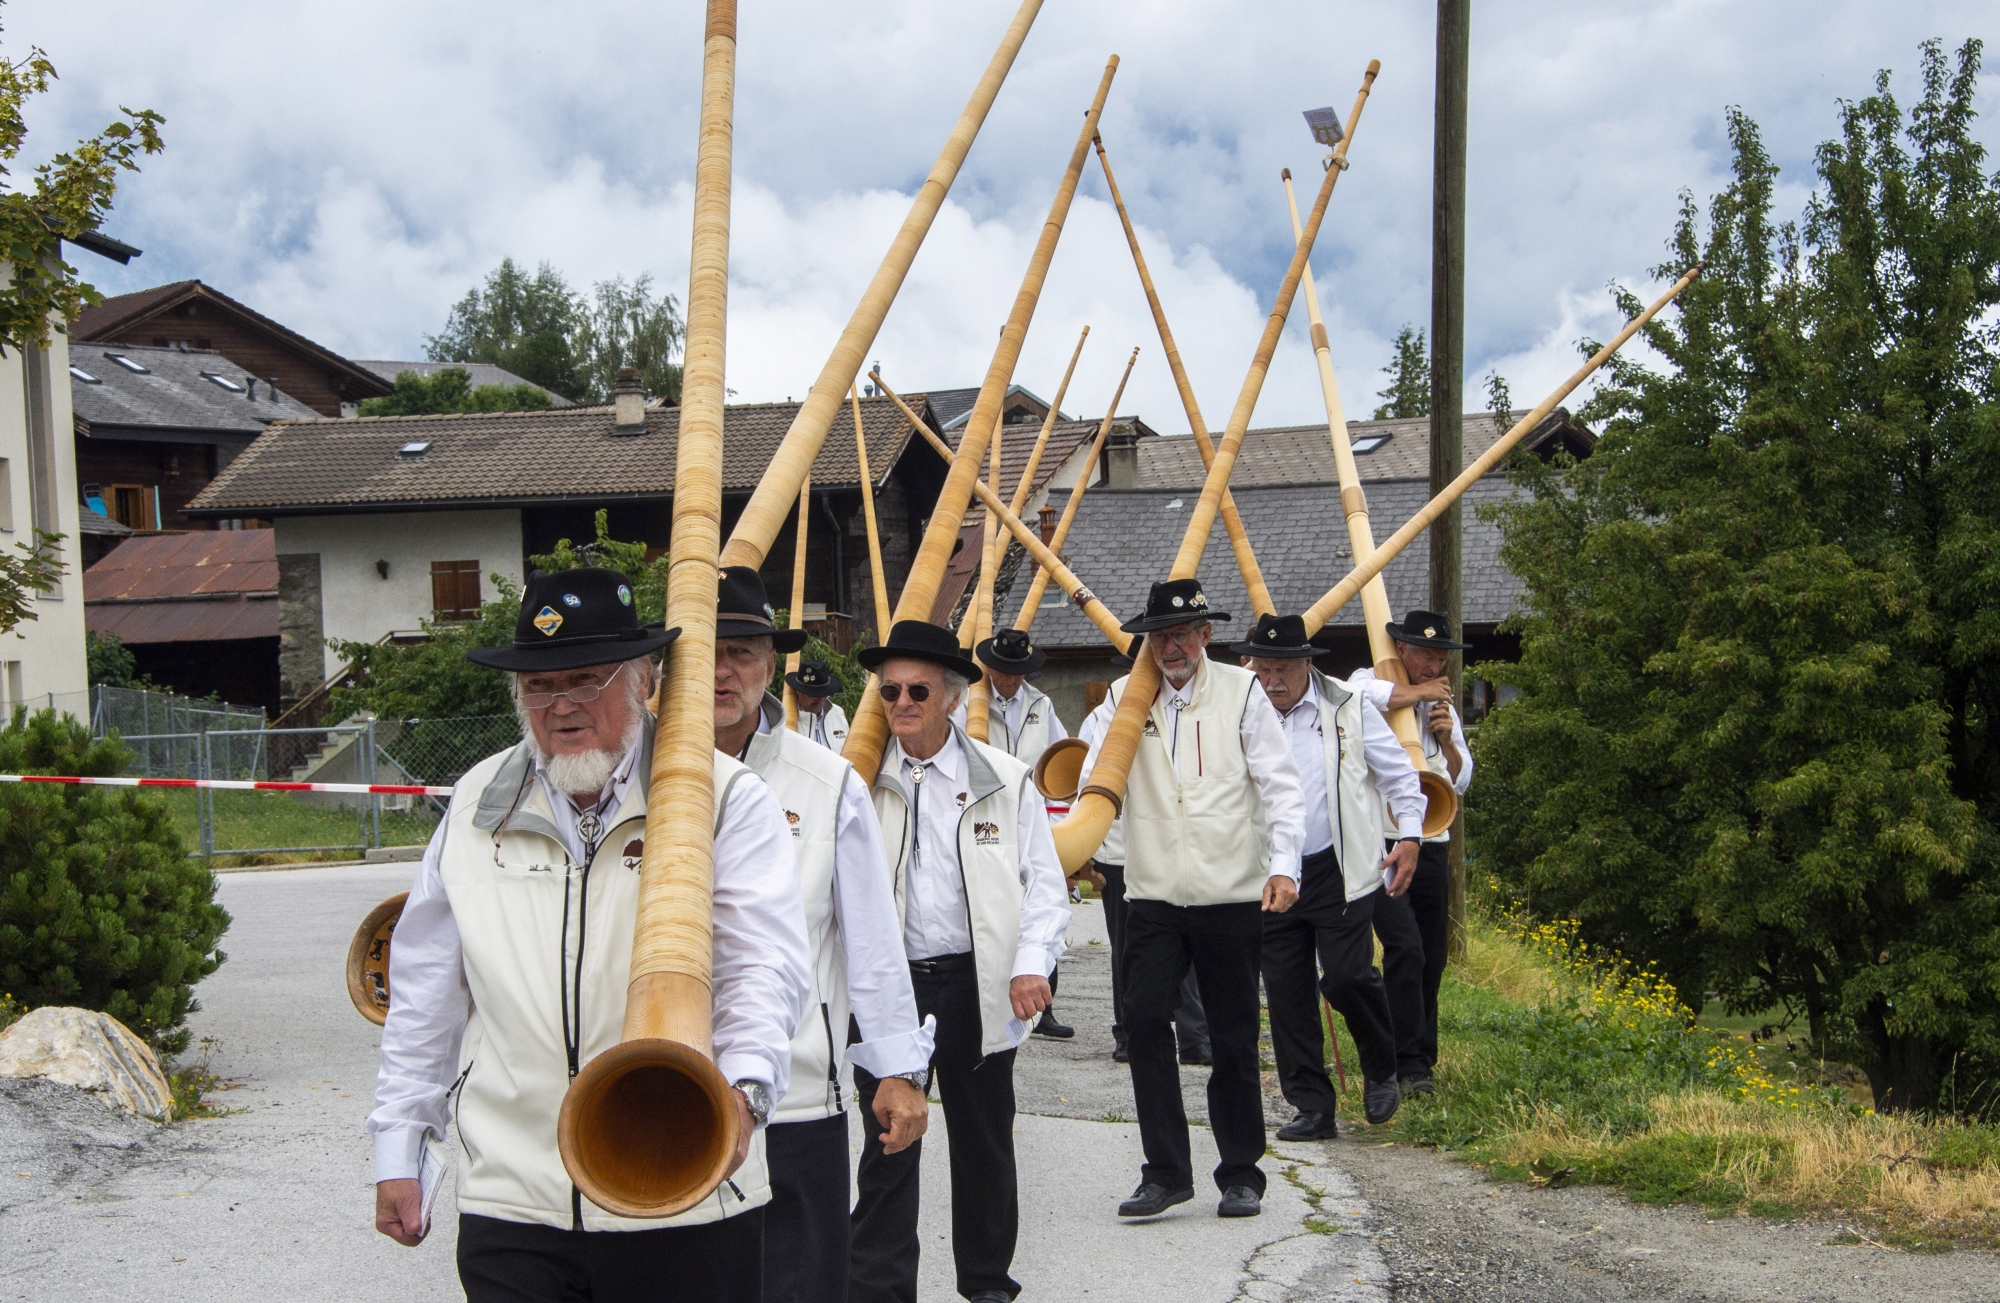  L'académie suisse de cors des Alpes est de la partie à Nendaz.